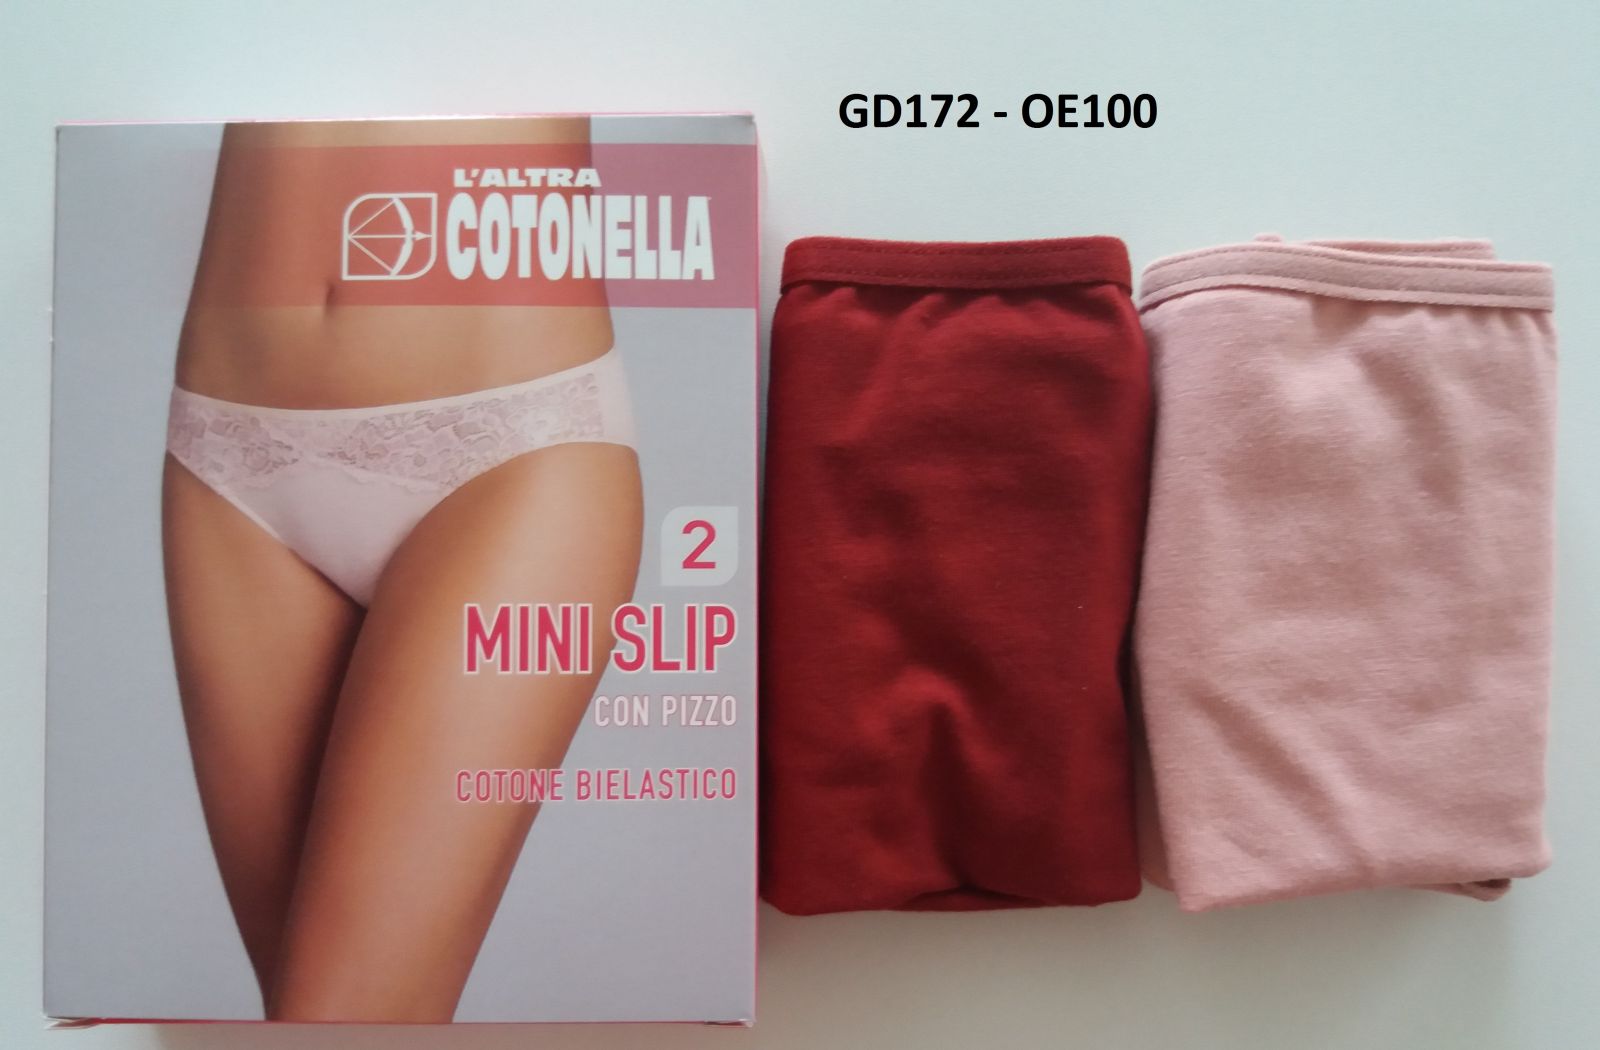 Cotonella GD172 minislip oe100